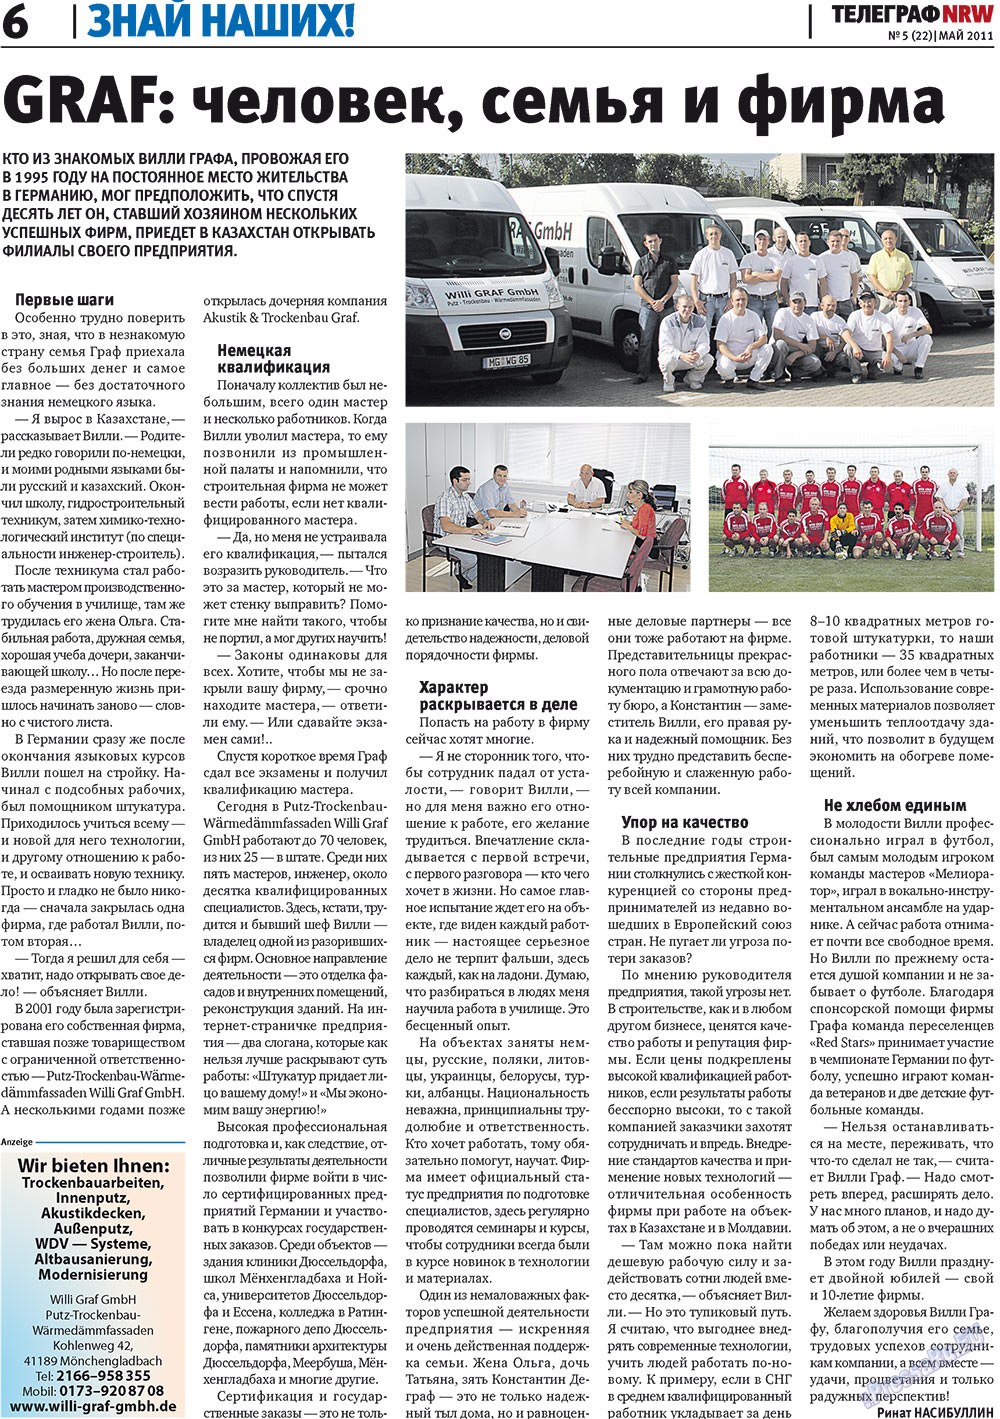 Телеграф NRW (газета). 2011 год, номер 5, стр. 6